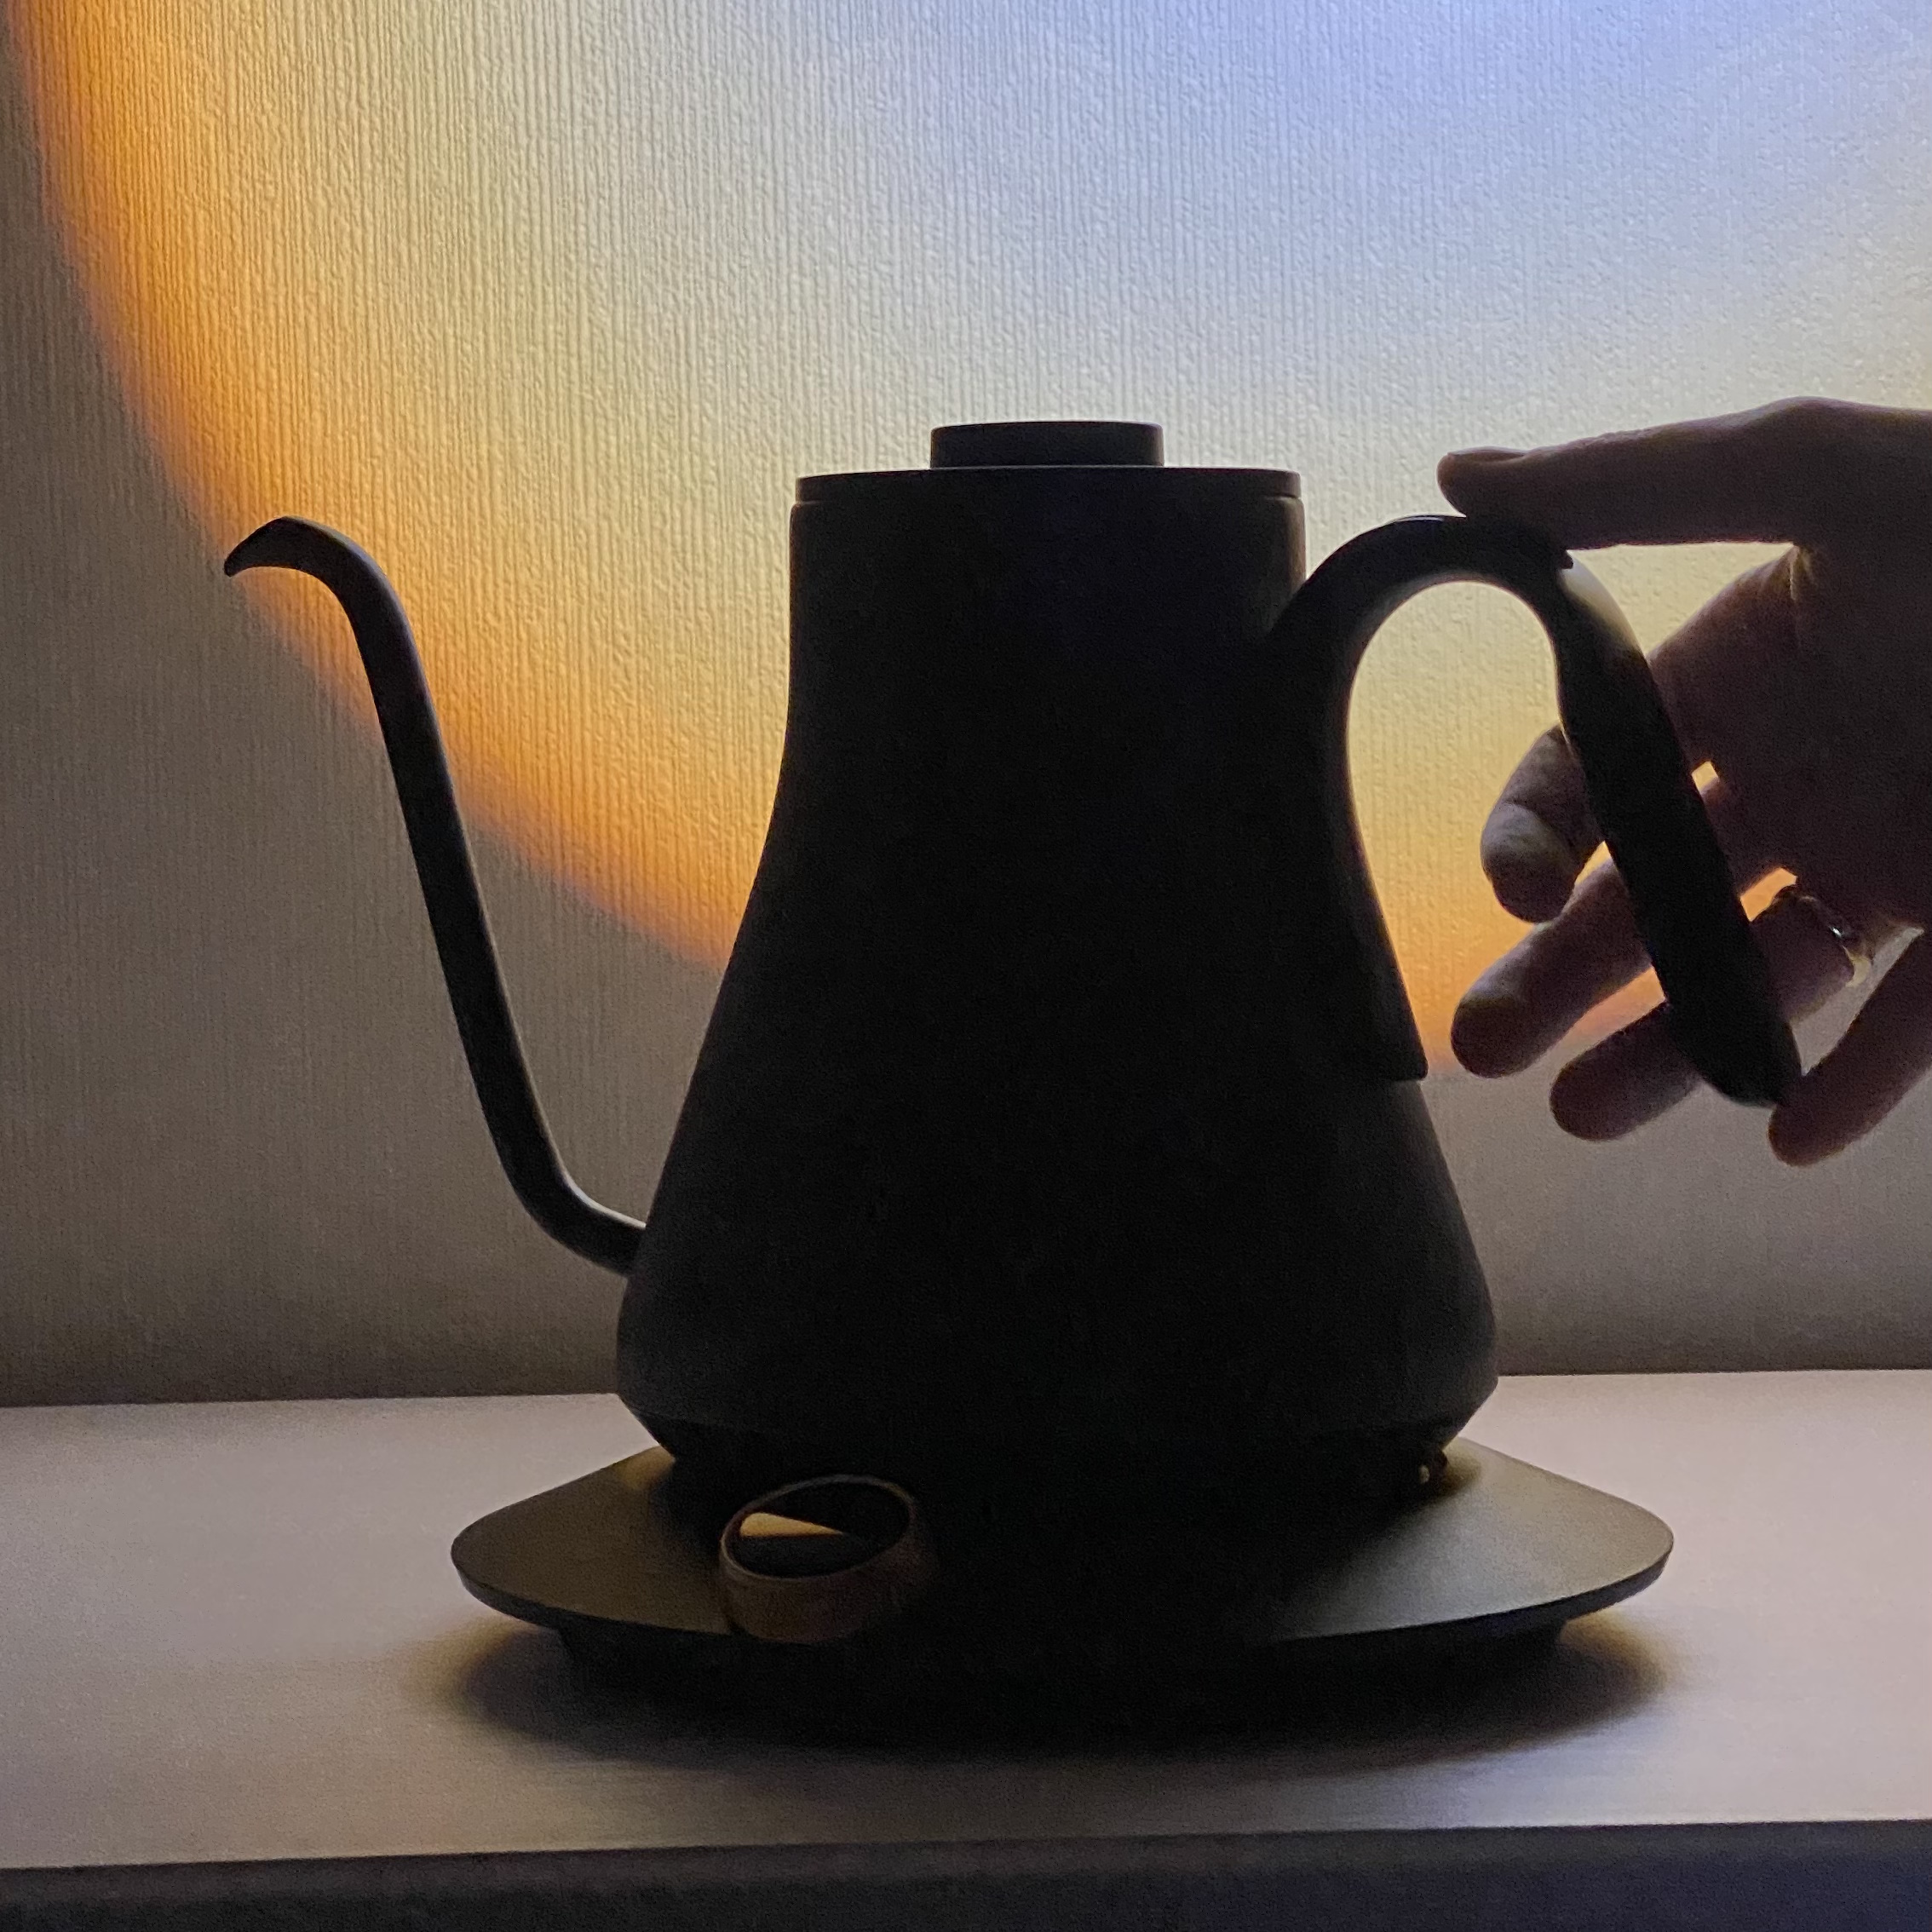 Из какого материала сделан чайник. Как построить чайник. Какие цветом бывают чайники. Чундук чайник. Из каких материалов делают чайники.